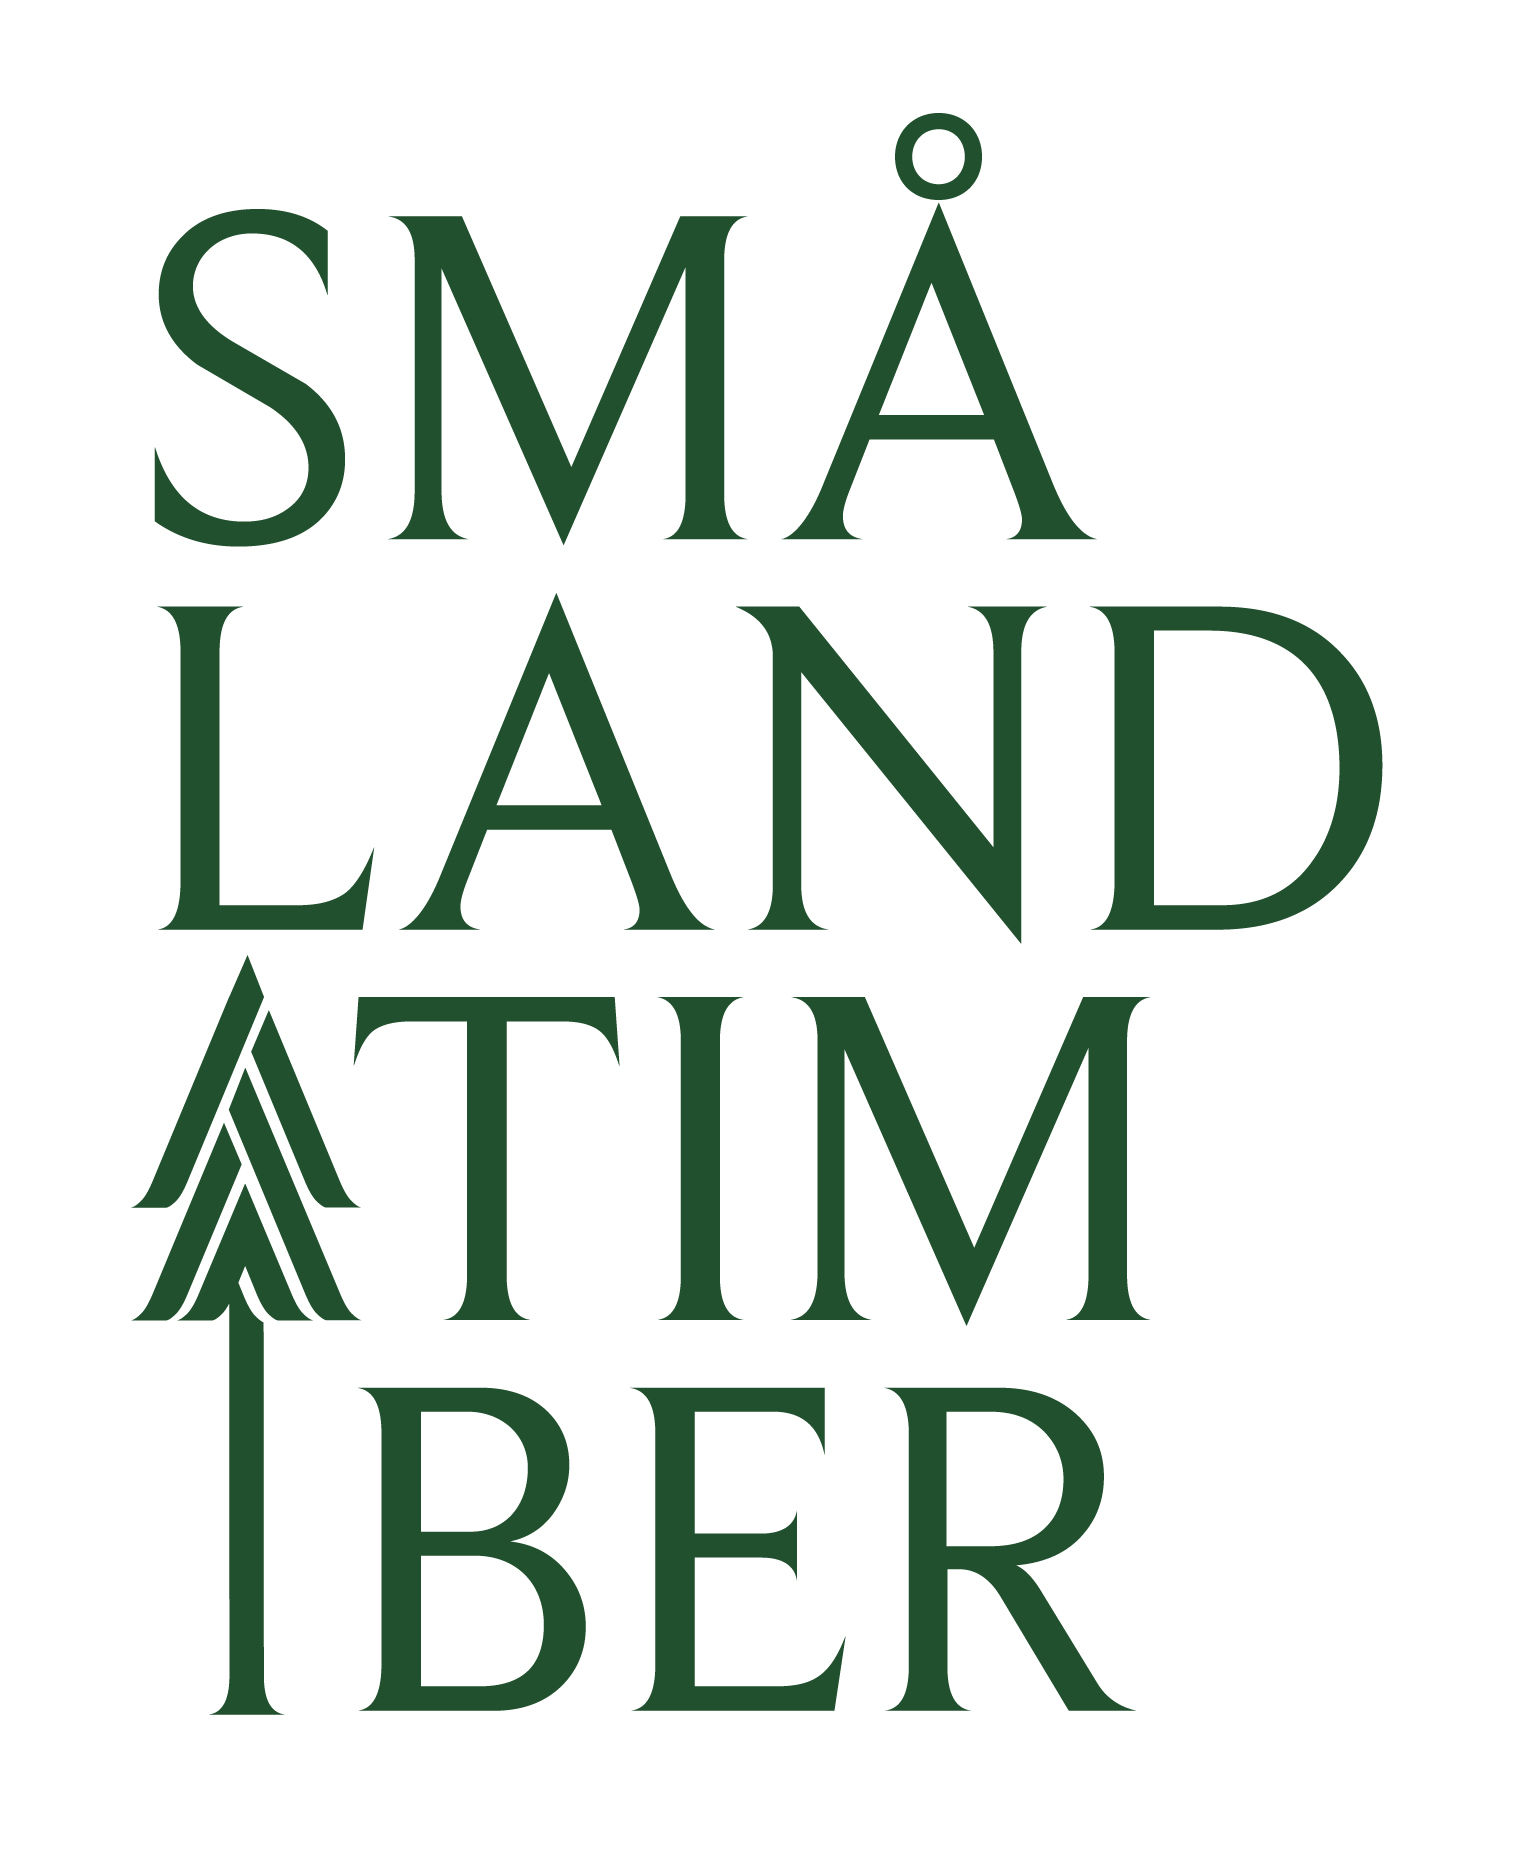 smalandtimber smaland timber smland timber smlandtimber 95x95 125x125 150x150 200x200